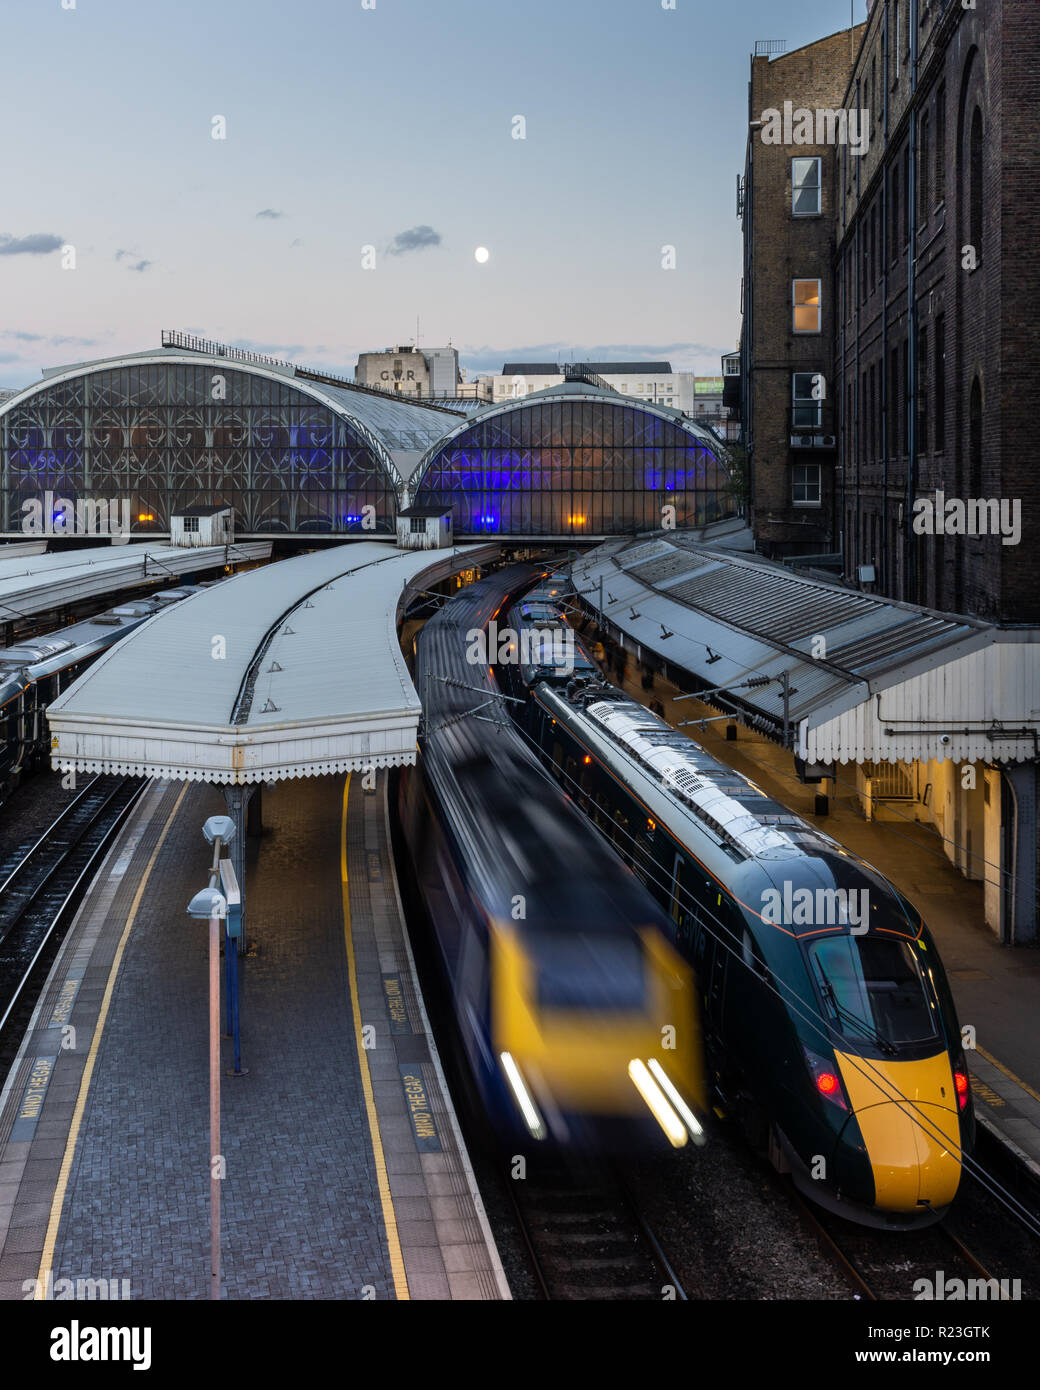 Londres, Angleterre, Royaume-Uni - 21 septembre 2018 : Un Intercity 125 Great Western Railway passenger train part de la gare de Paddington de Londres alors qu'une classe 800 Banque D'Images